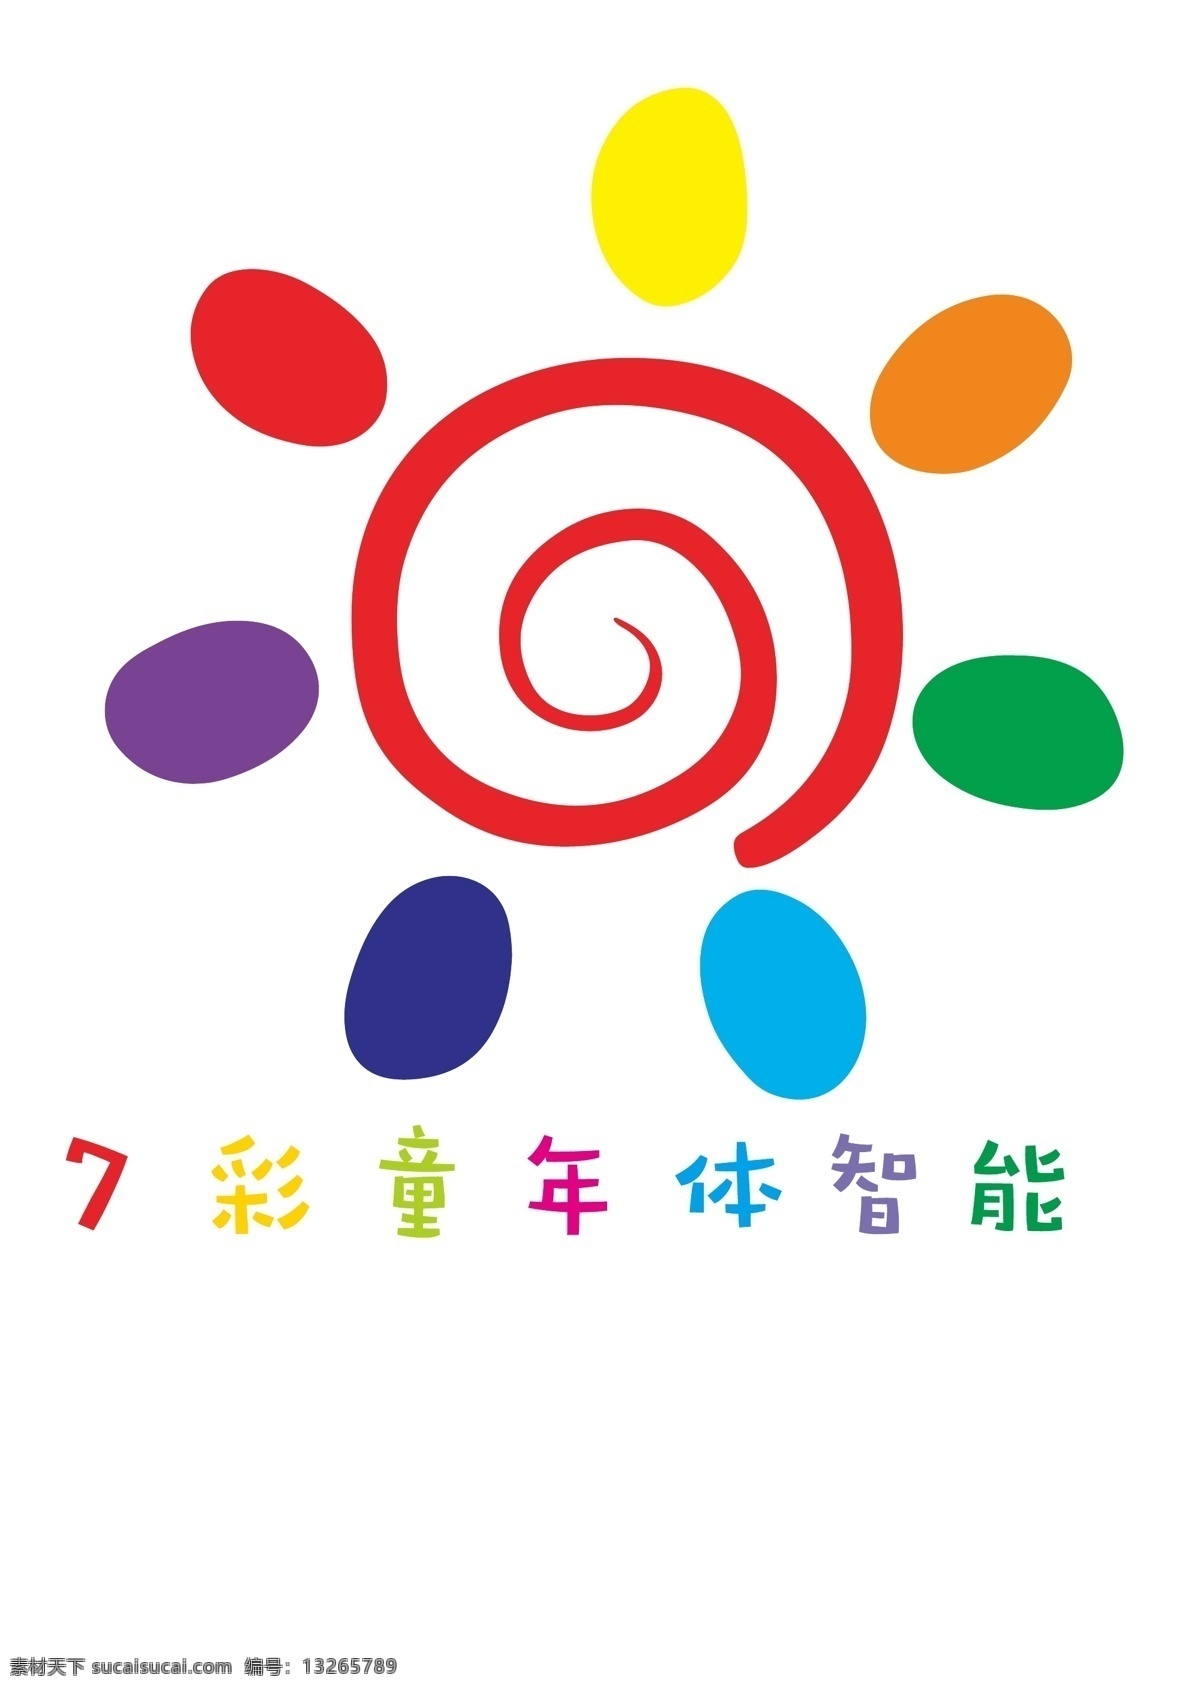 七彩童年 彩色logo 卡通logo logo设计 幼儿园 logo 早教中心标志 标志图标 企业 标志